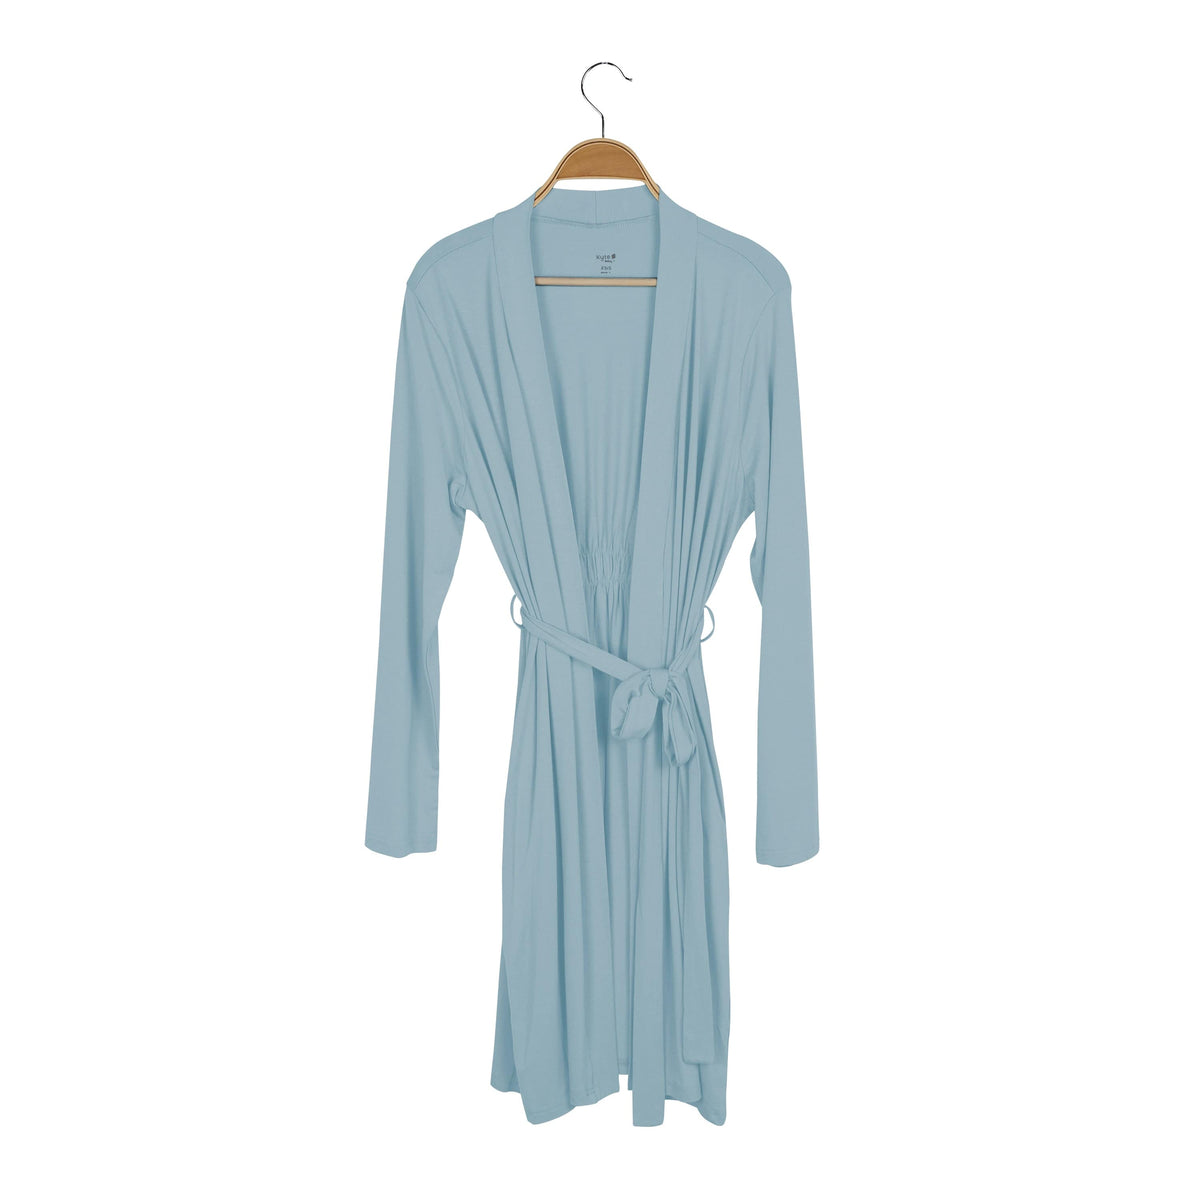 Kyte Baby Women's Lounge Robe Women’s Lounge Robe in Dusty Blue